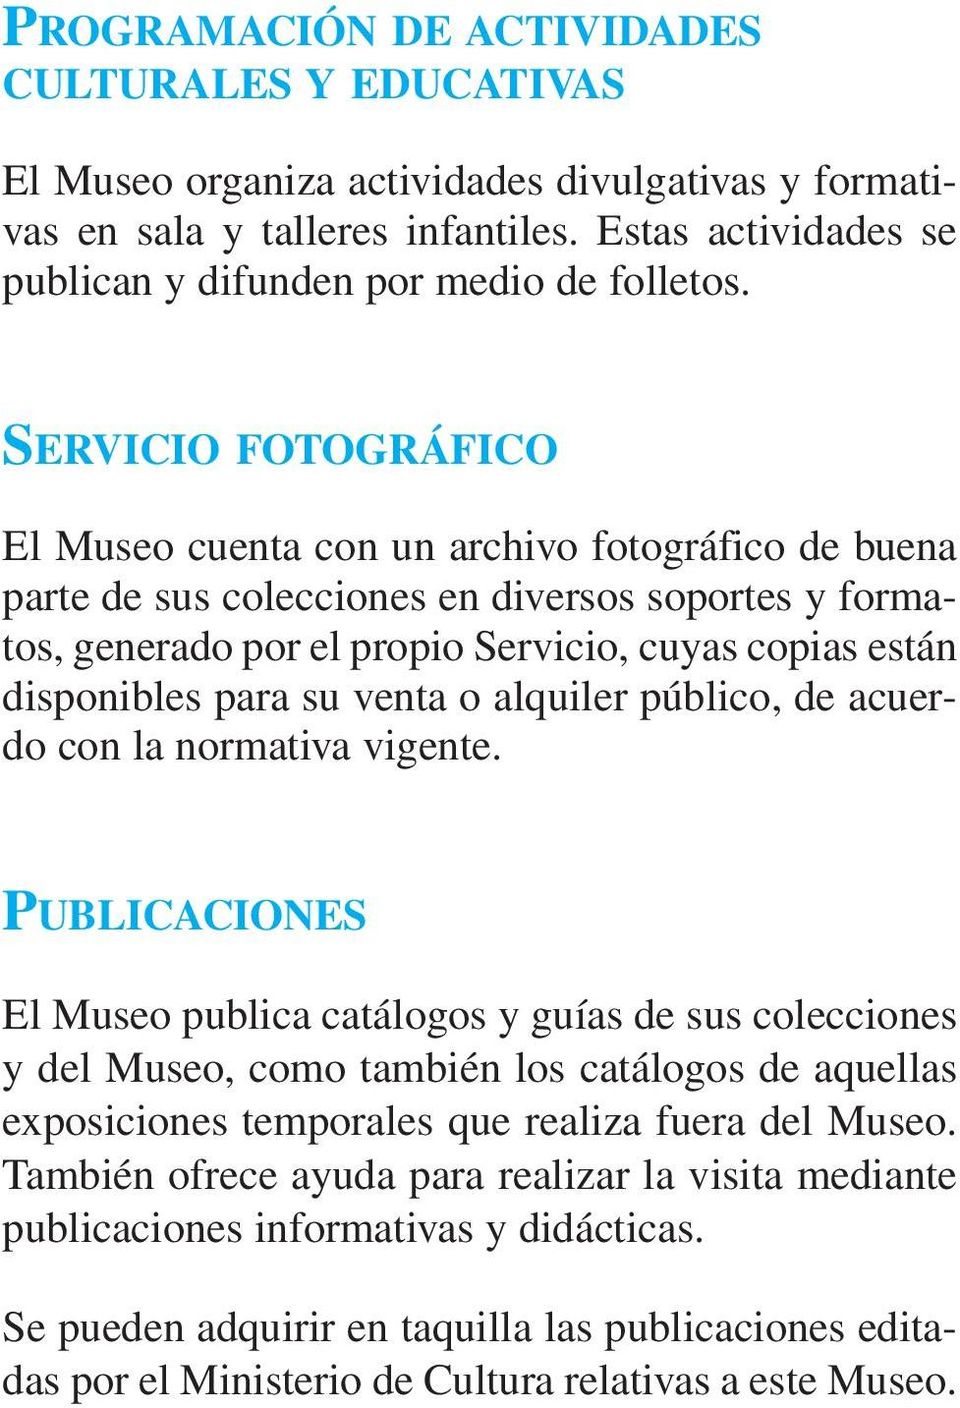 SERVICIO FOTOGRÁFICO El Museo cuenta con un archivo fotográfico de buena parte de sus colecciones en diversos soportes y formatos, generado por el propio Servicio, cuyas copias están disponibles para